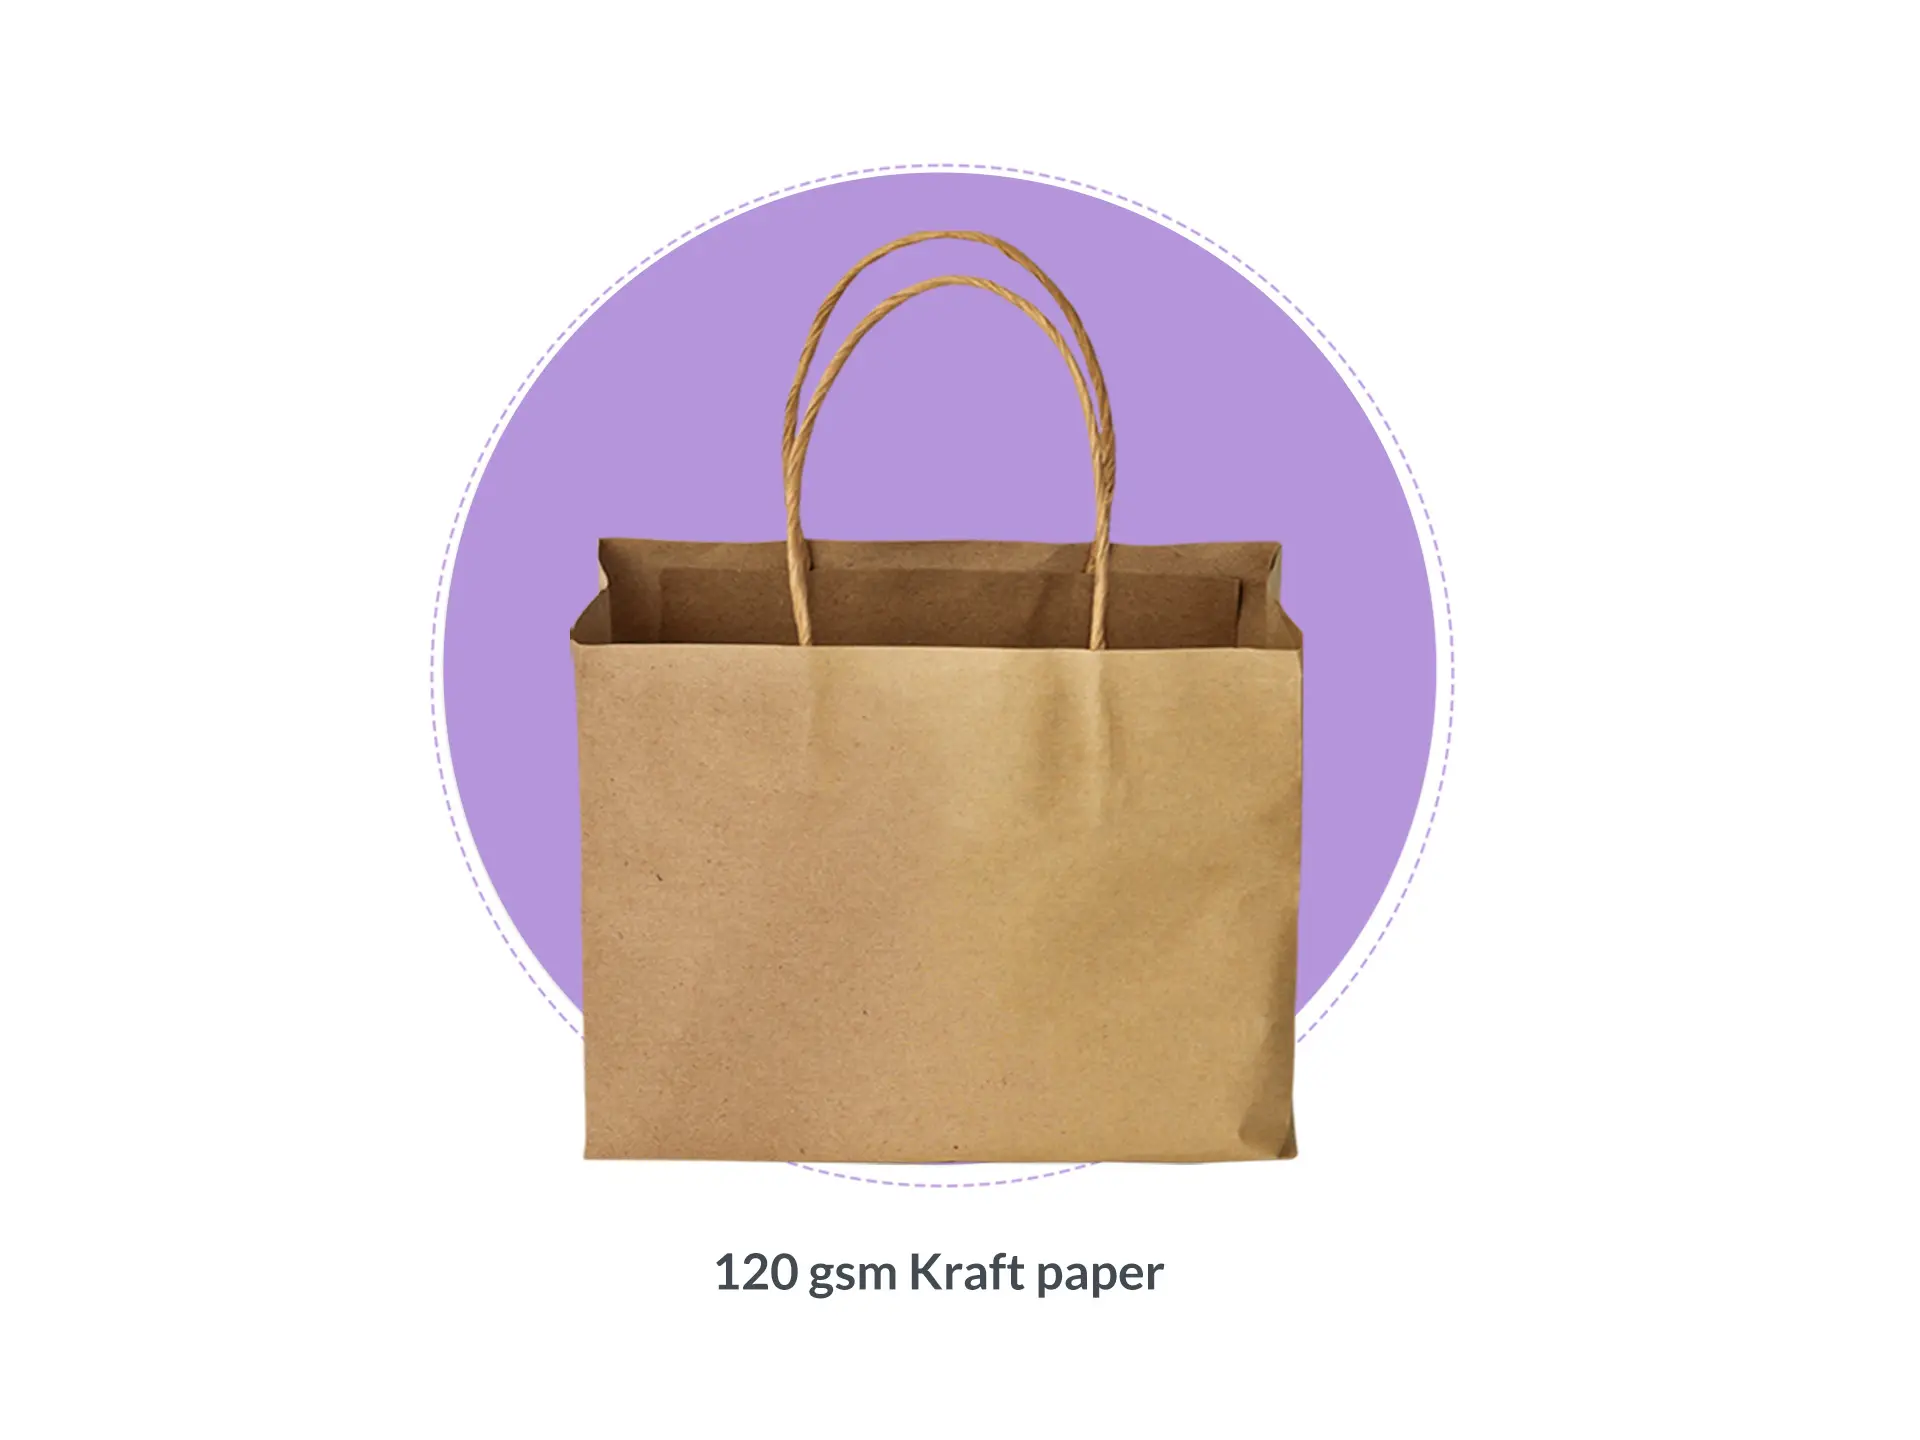 Paper Bag Materials